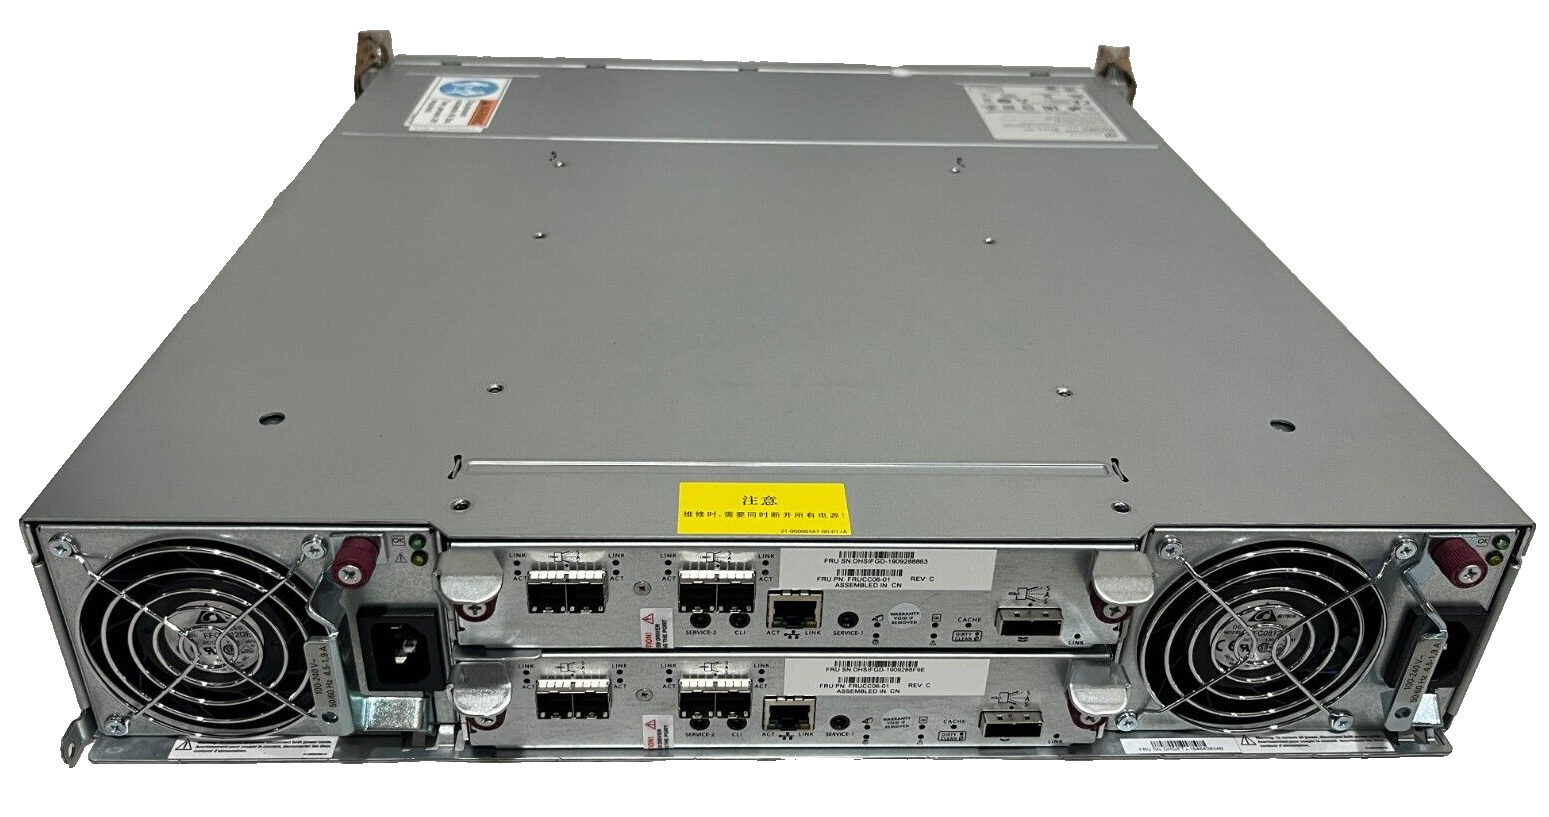 Seagate AssuredSan D4524 2x FRUCC06-01 12Gbps SAS Controllers 17x 600GB Exos DBB